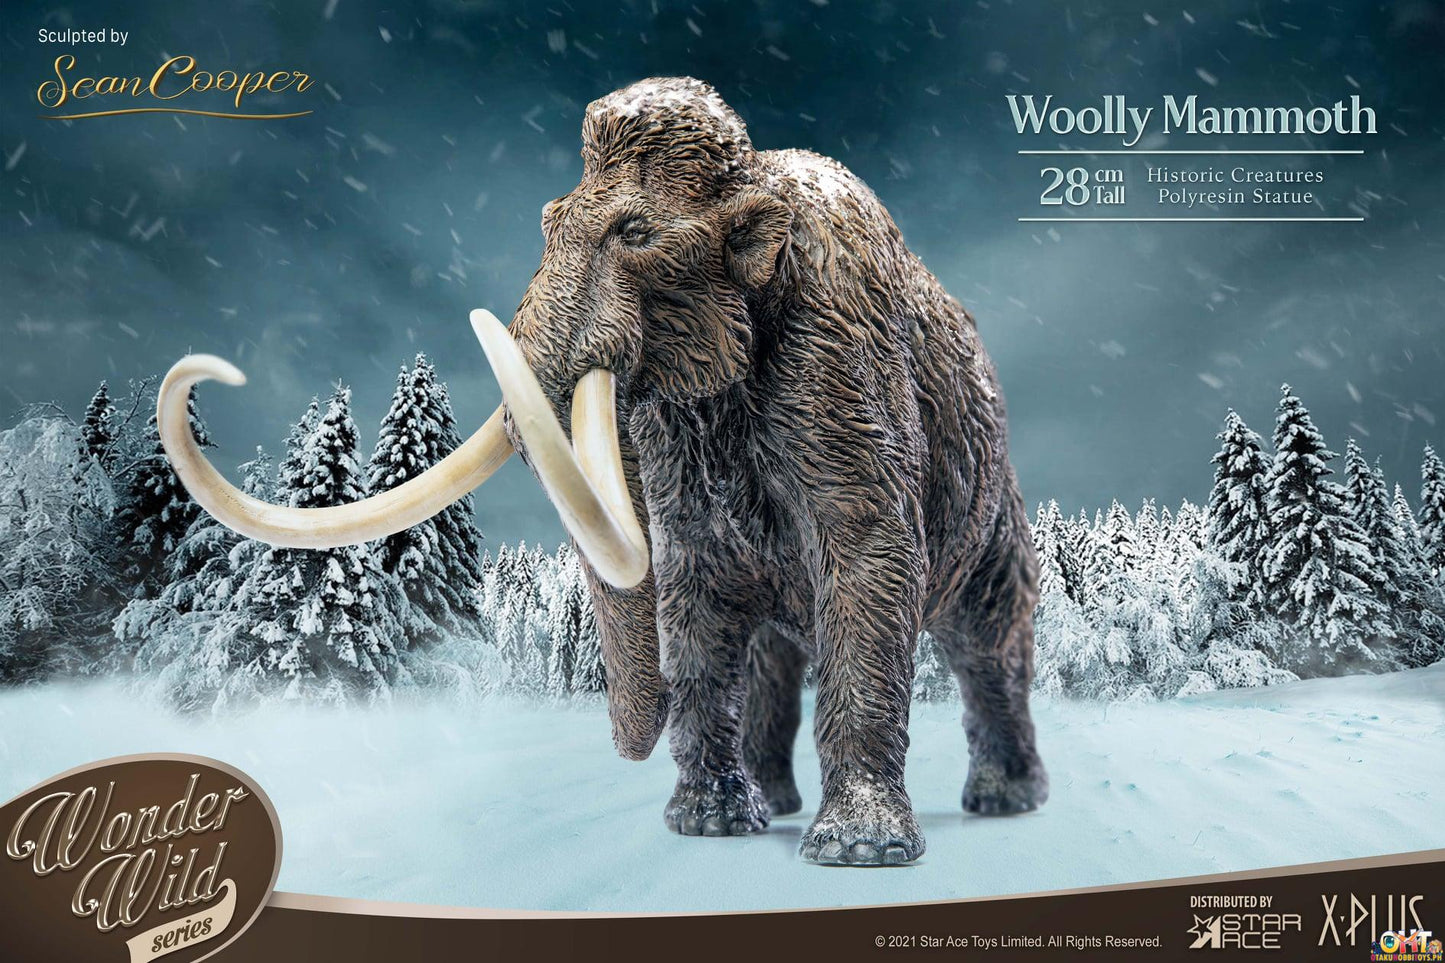 Star Ace Wonder Wild Woolly Mammoth